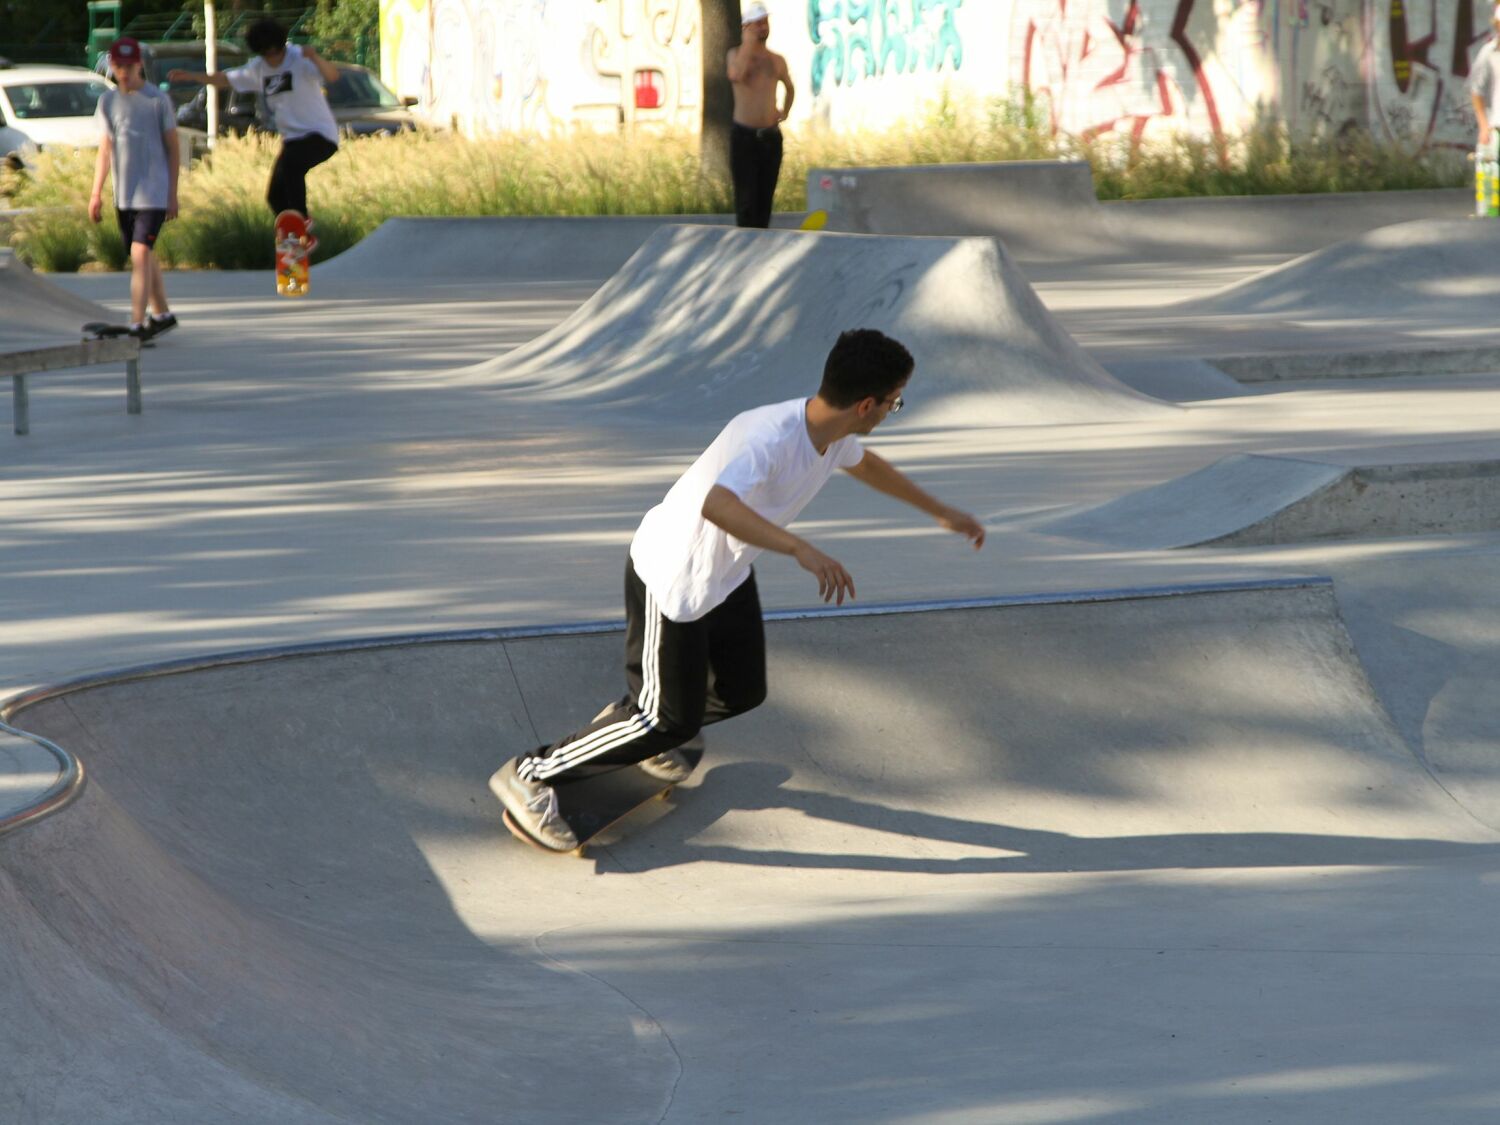 Jugendliche beim Skateboardfahren in einer Bowl